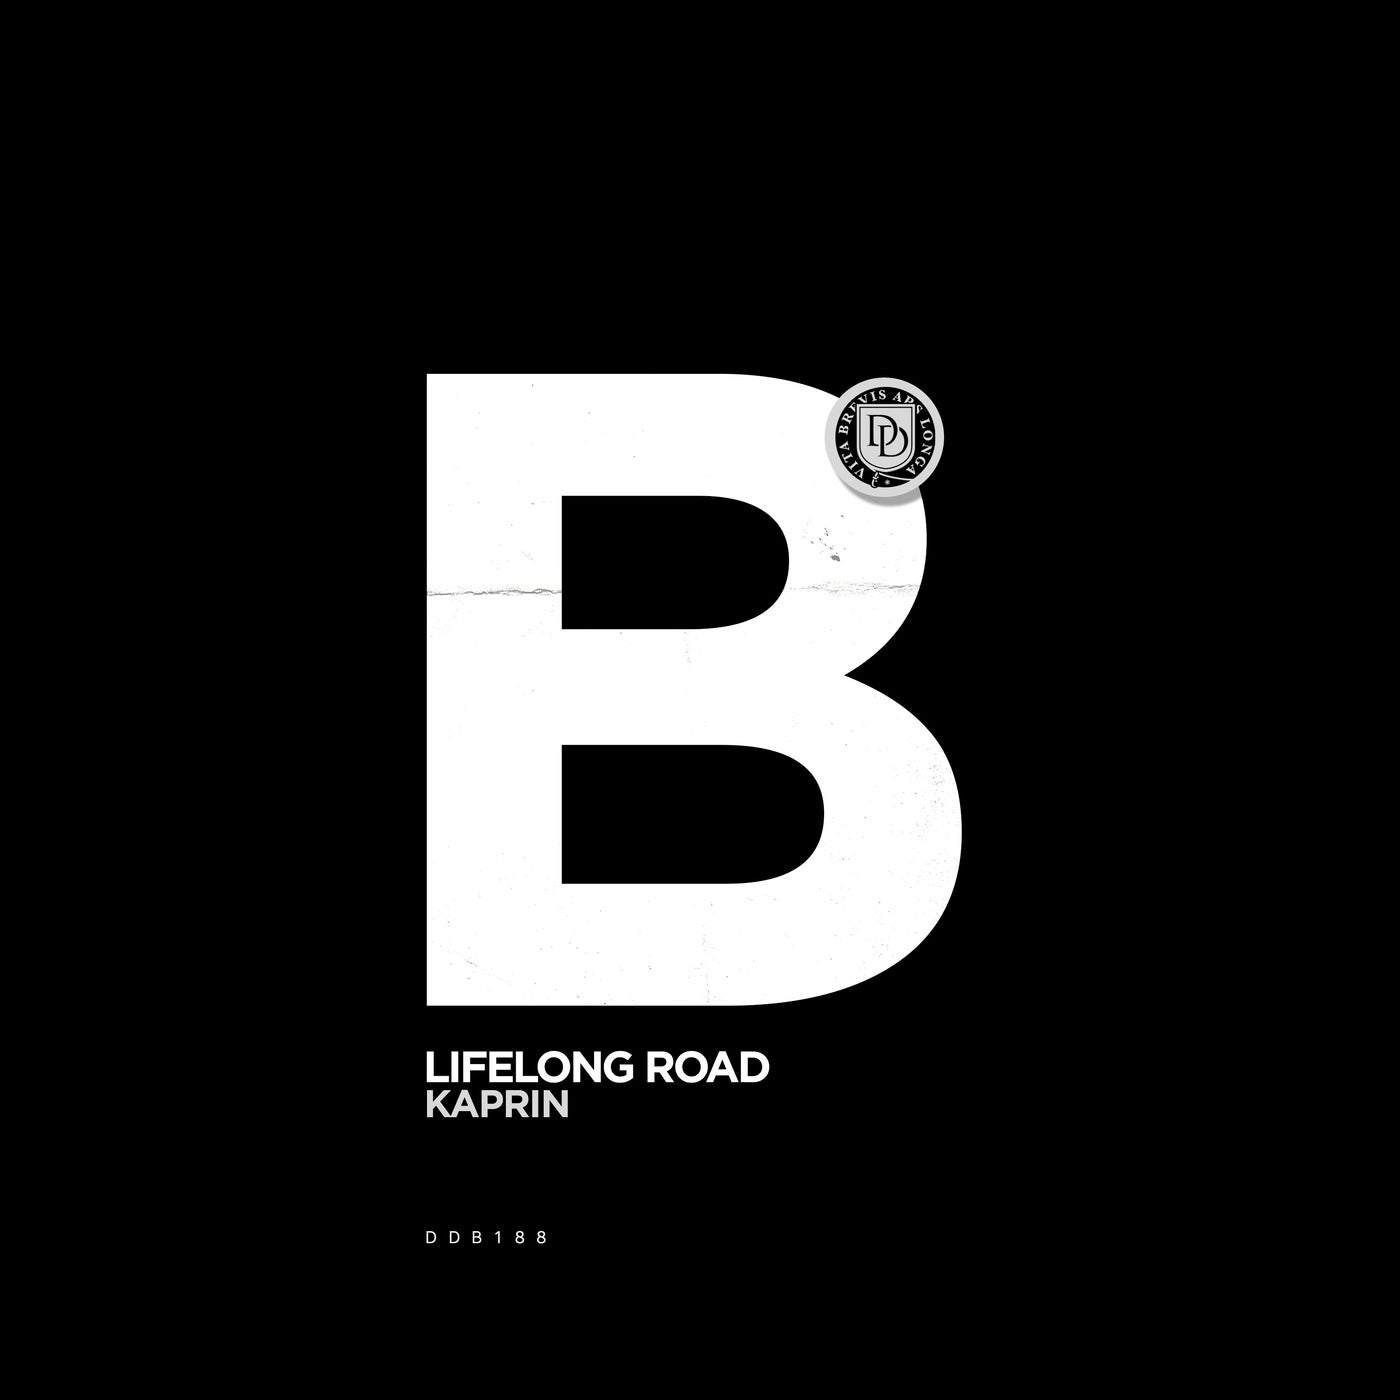 Lifelong Road